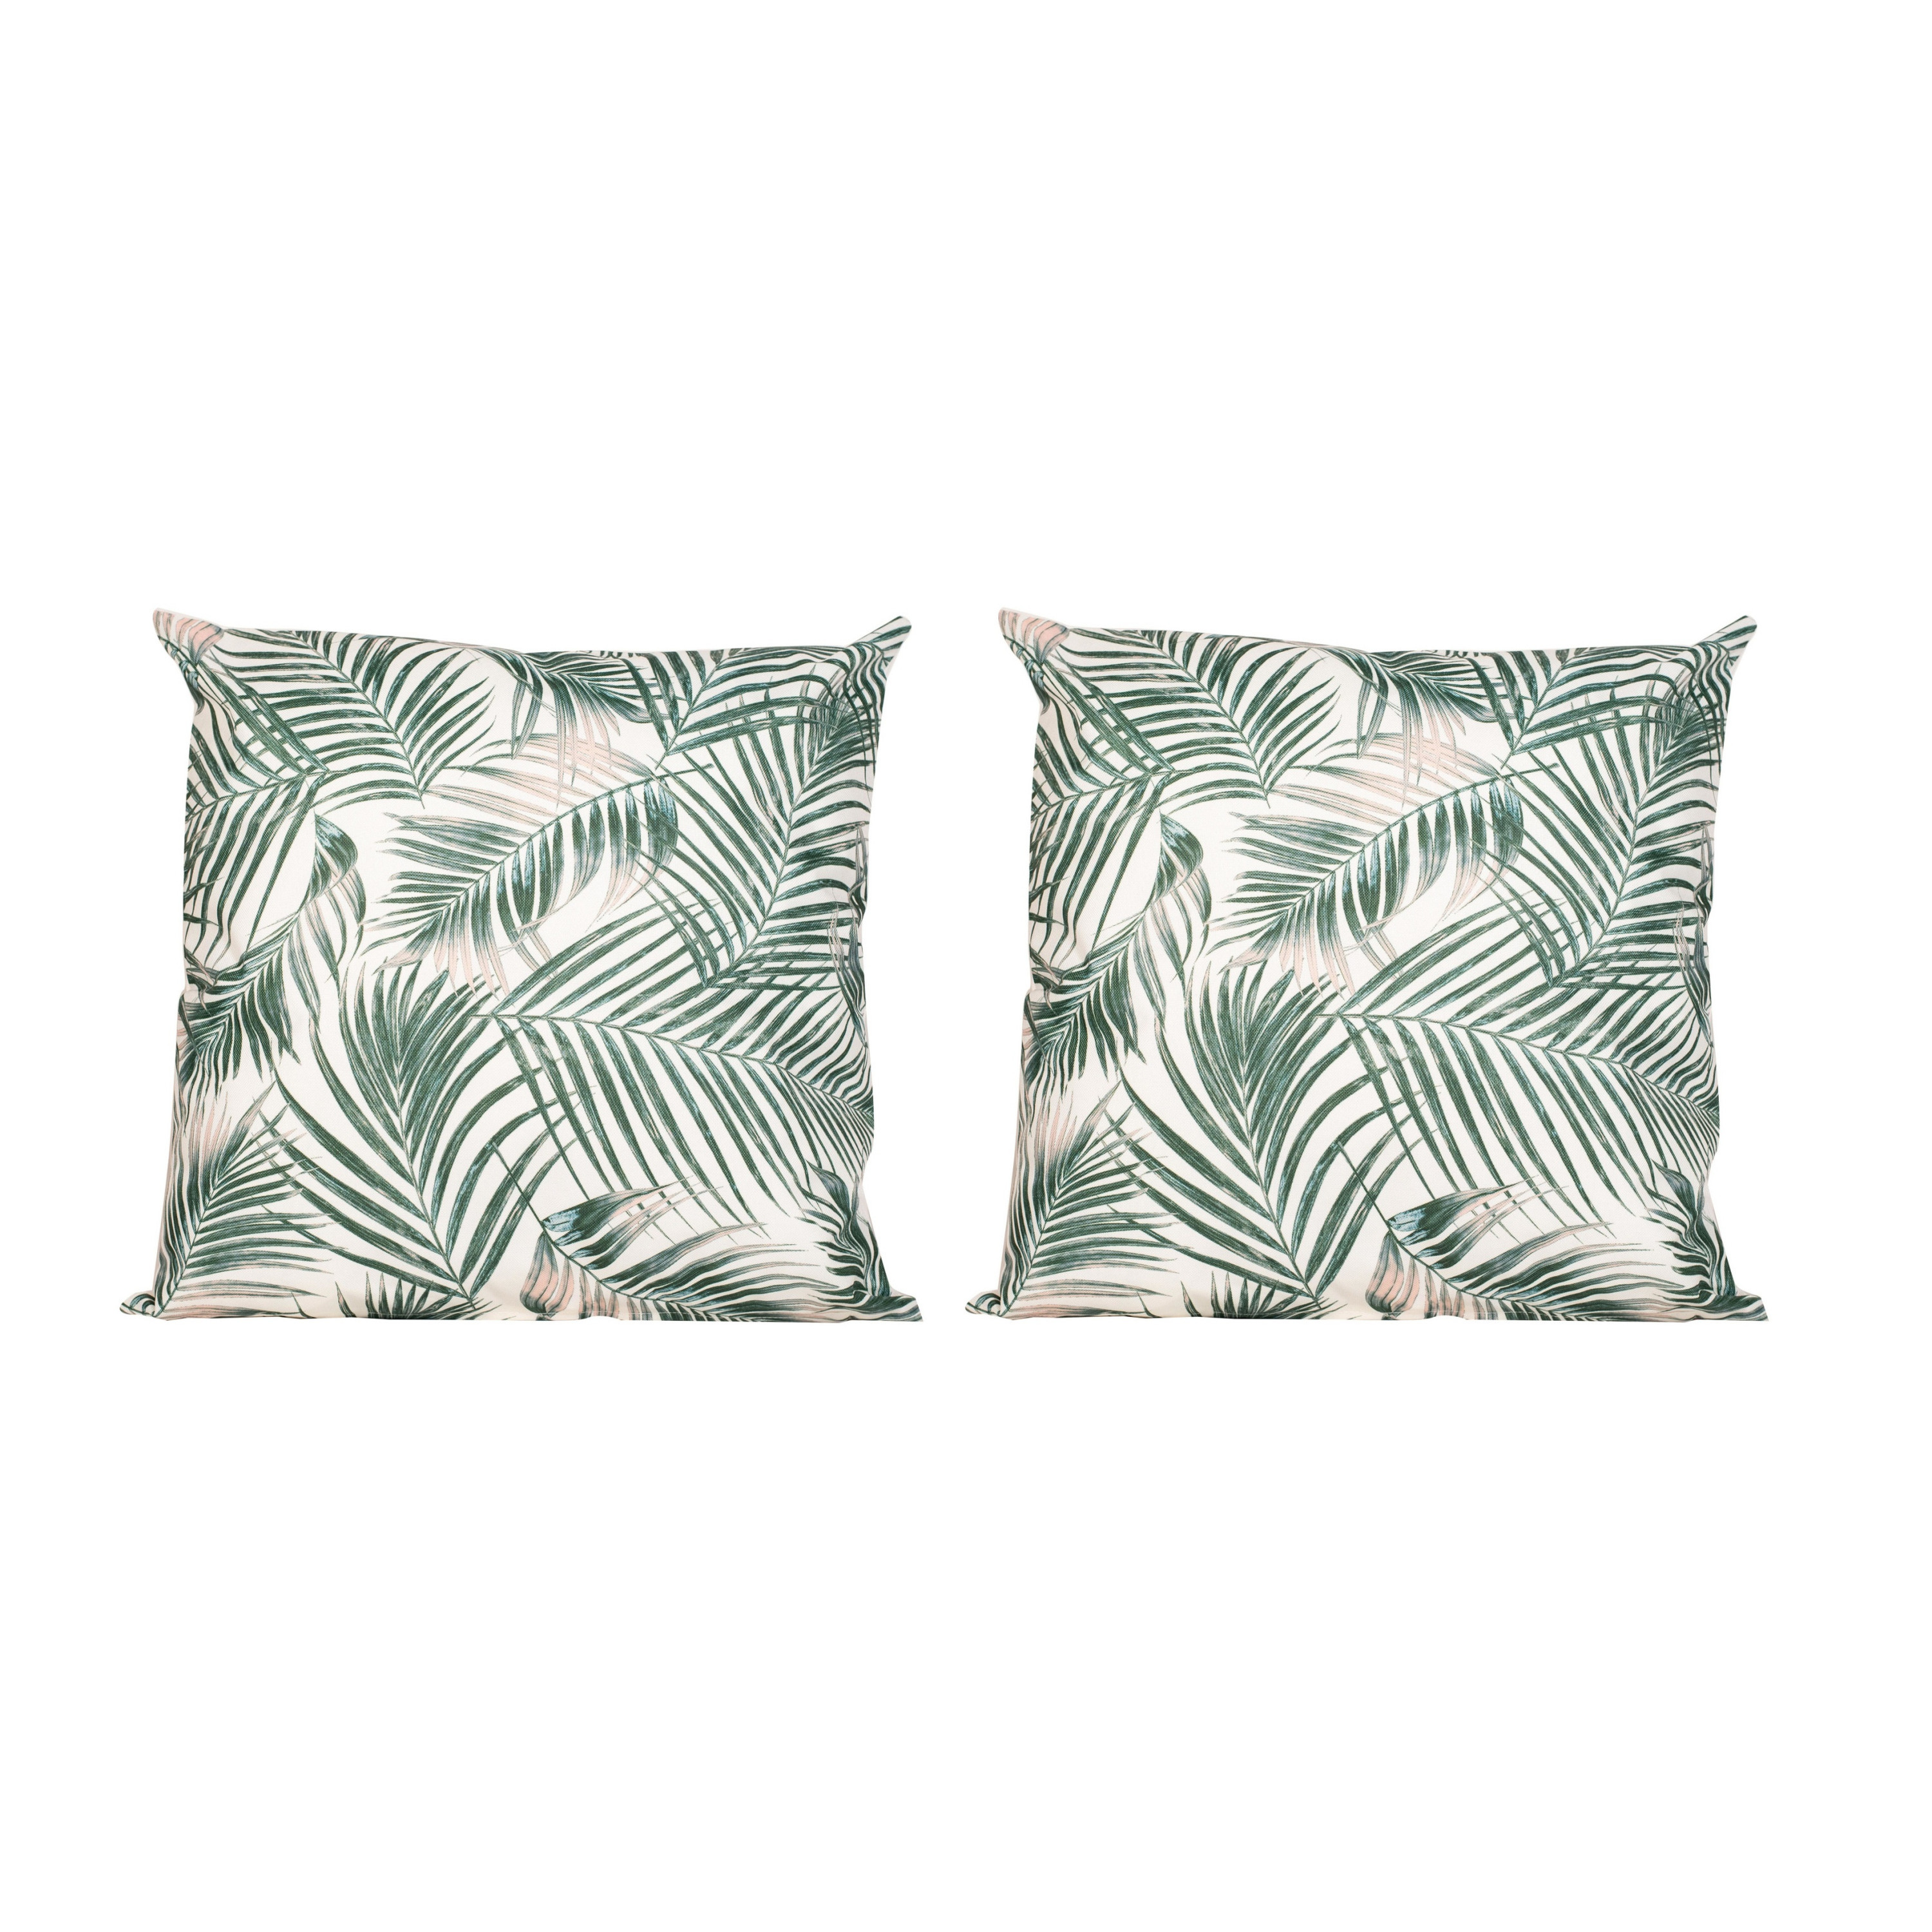 6x Bank-sier kussens met palm plant-bladeren print voor binnen en buiten 45 x 45 cm